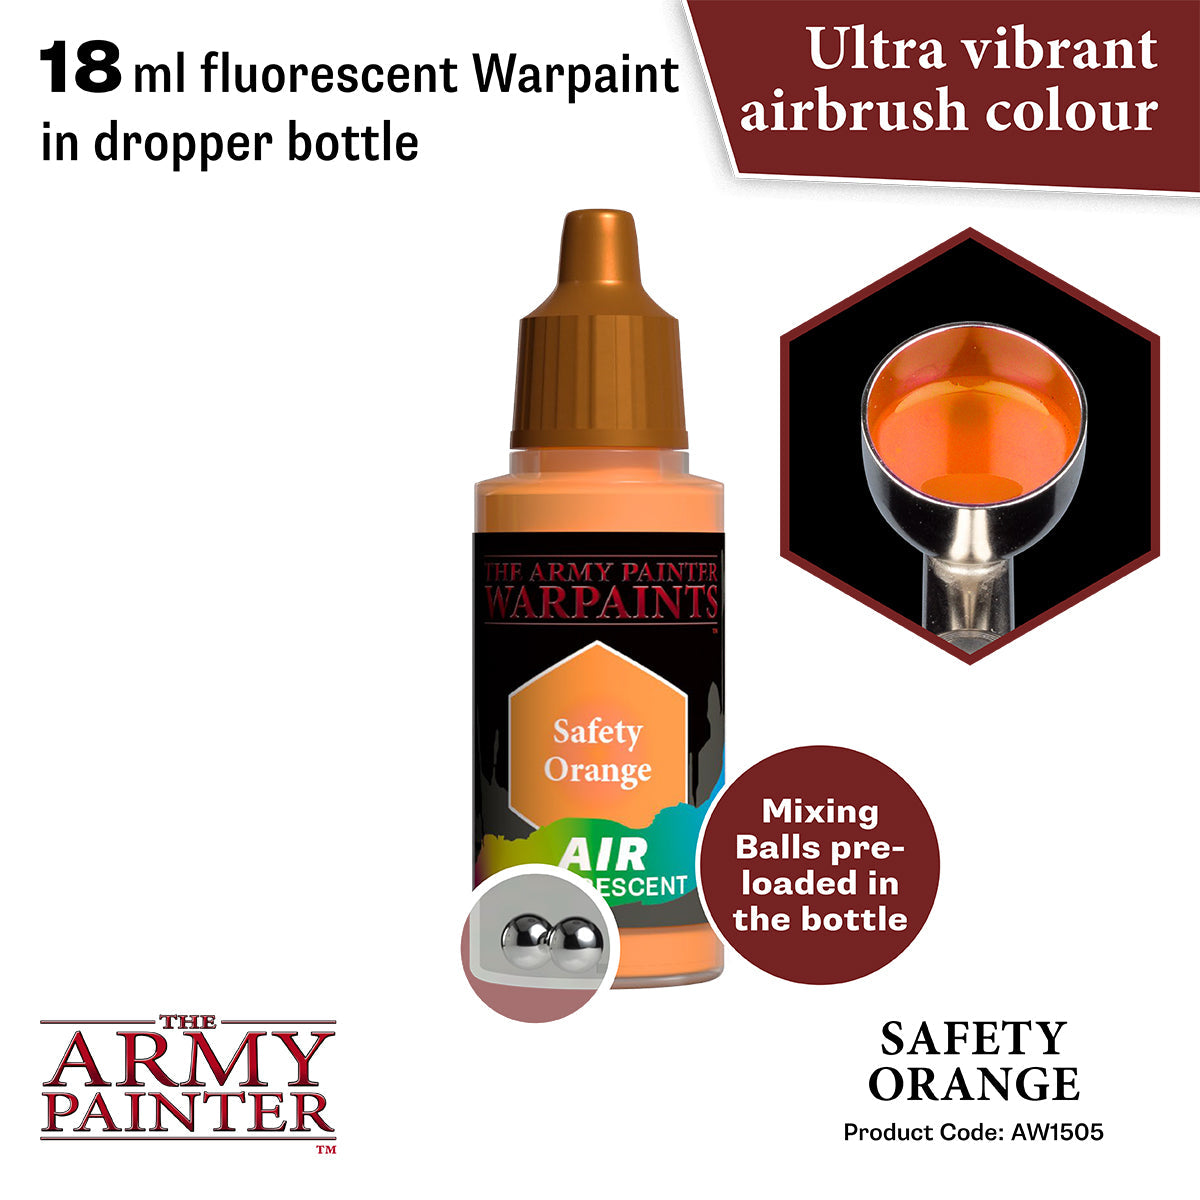 Warpaints Air Fluorescent: Safety Orange